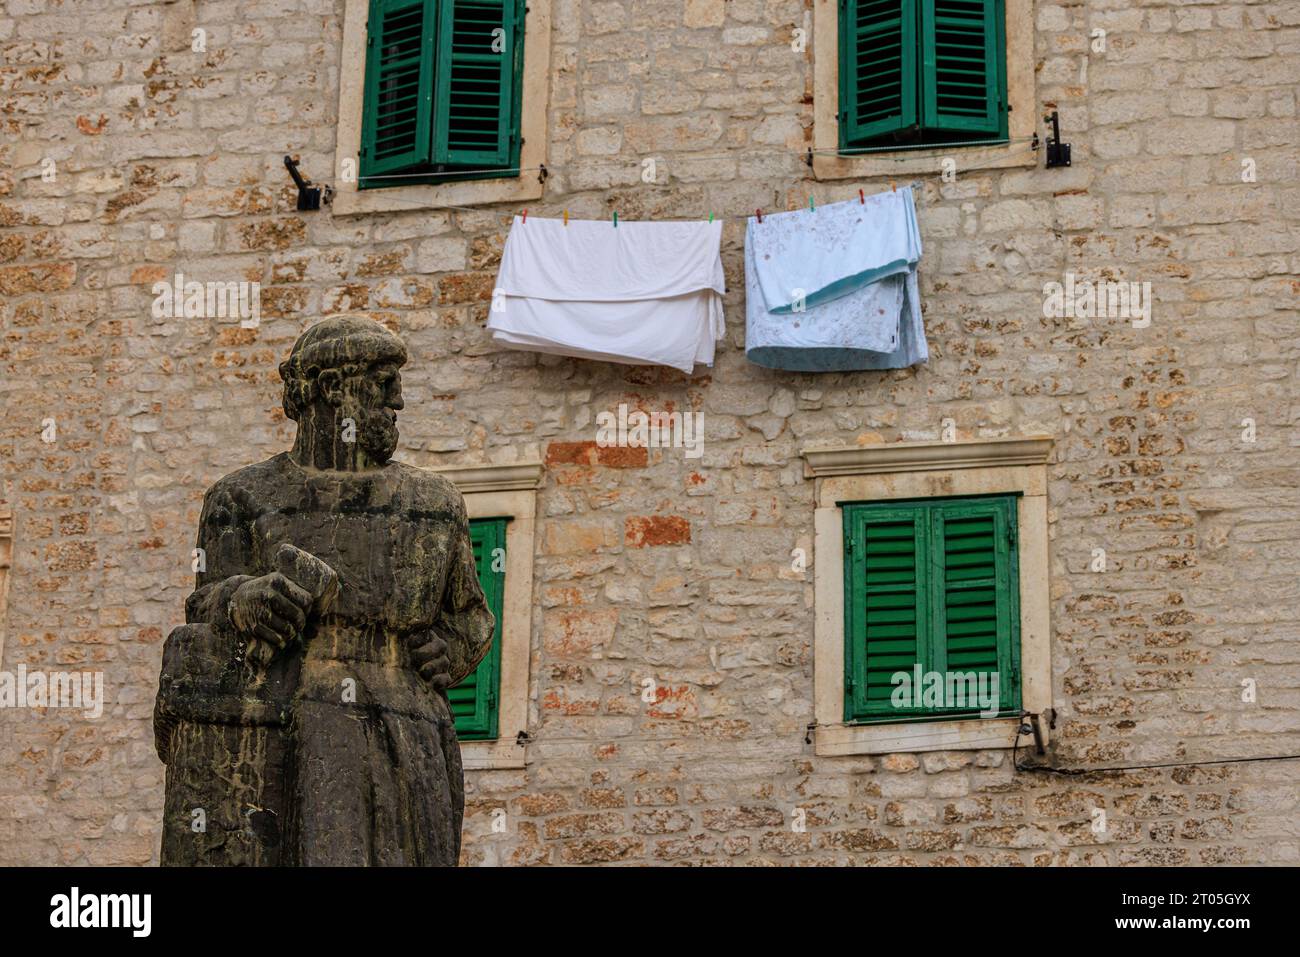 la estatua del jurai dalmatinek mira con desdén la ropa que cuelga para secarse debajo de dos ventanas verdes con persianas en la plaza de la catedral sibenik croacia Foto de stock